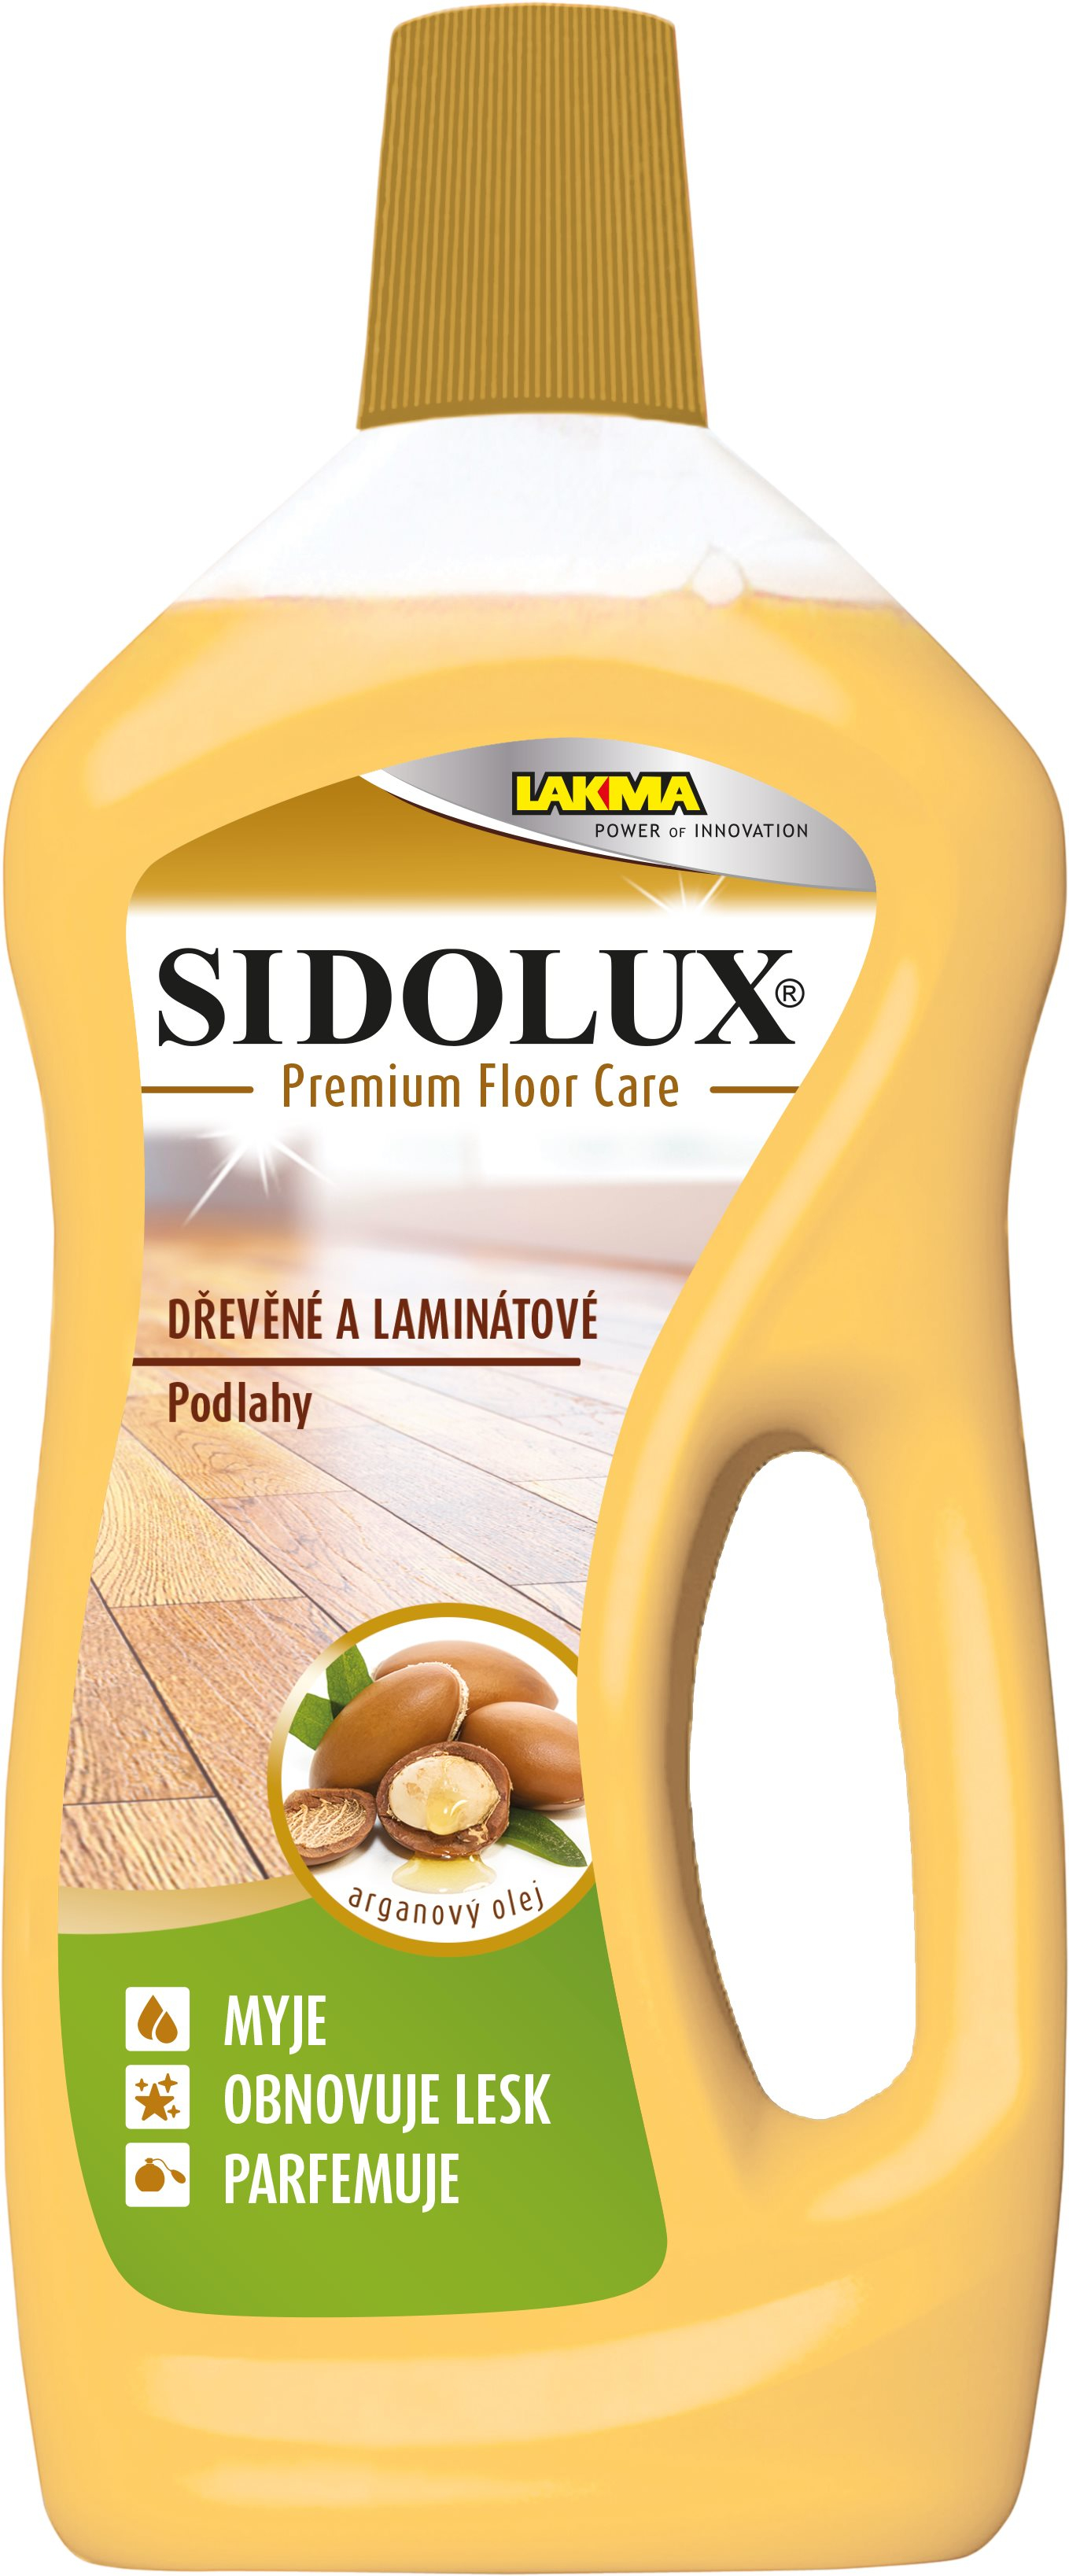 Padlótisztító SIDOLUX Premium Floor Care argánolajjal, fa és laminált padló, 750 ml